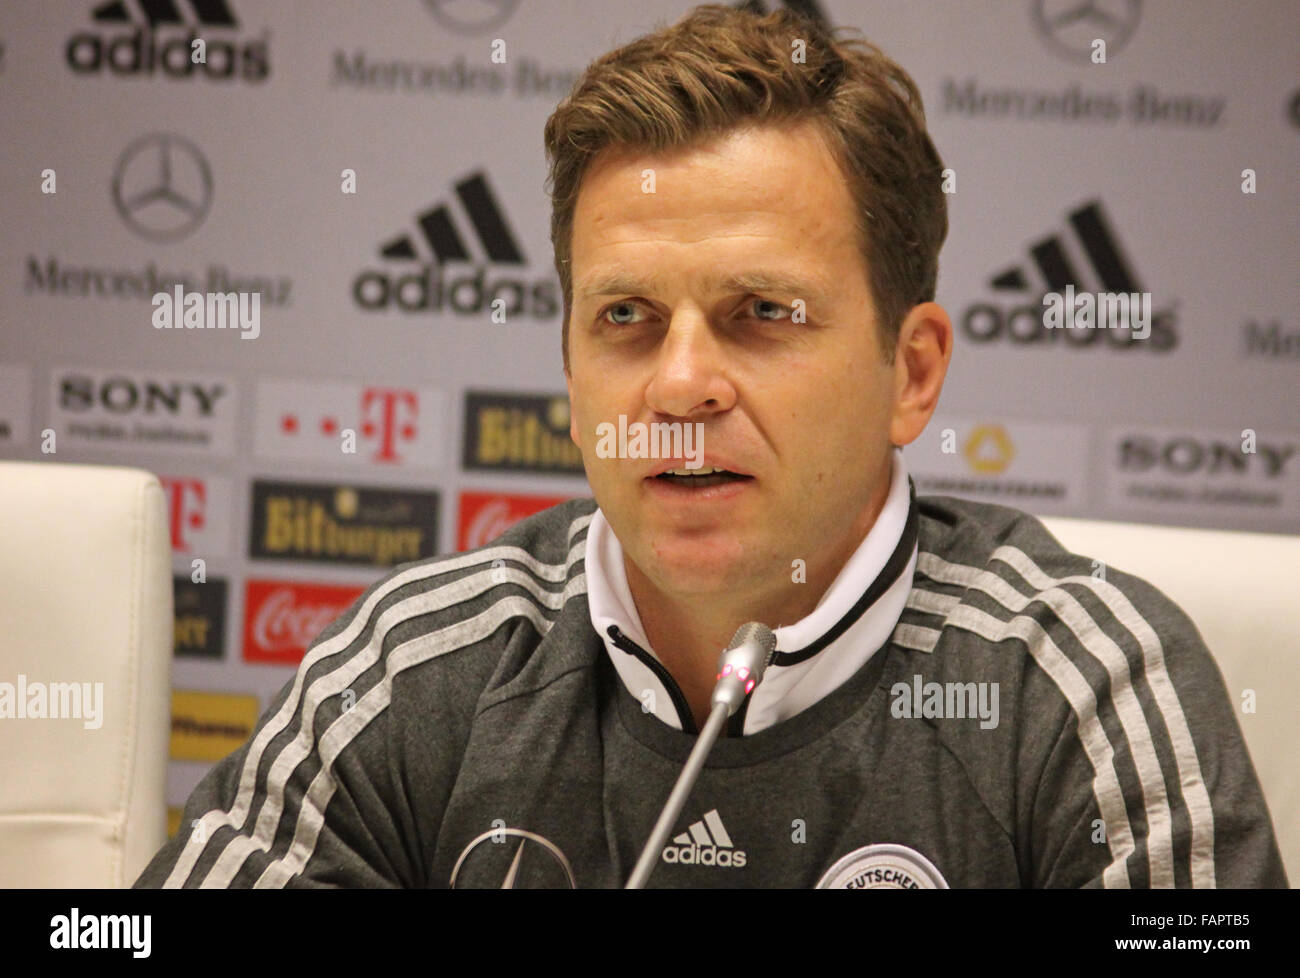 Squadra nazionale di calcio tedesca manager Oliver Bierhoff partecipa a una conferenza stampa Foto Stock